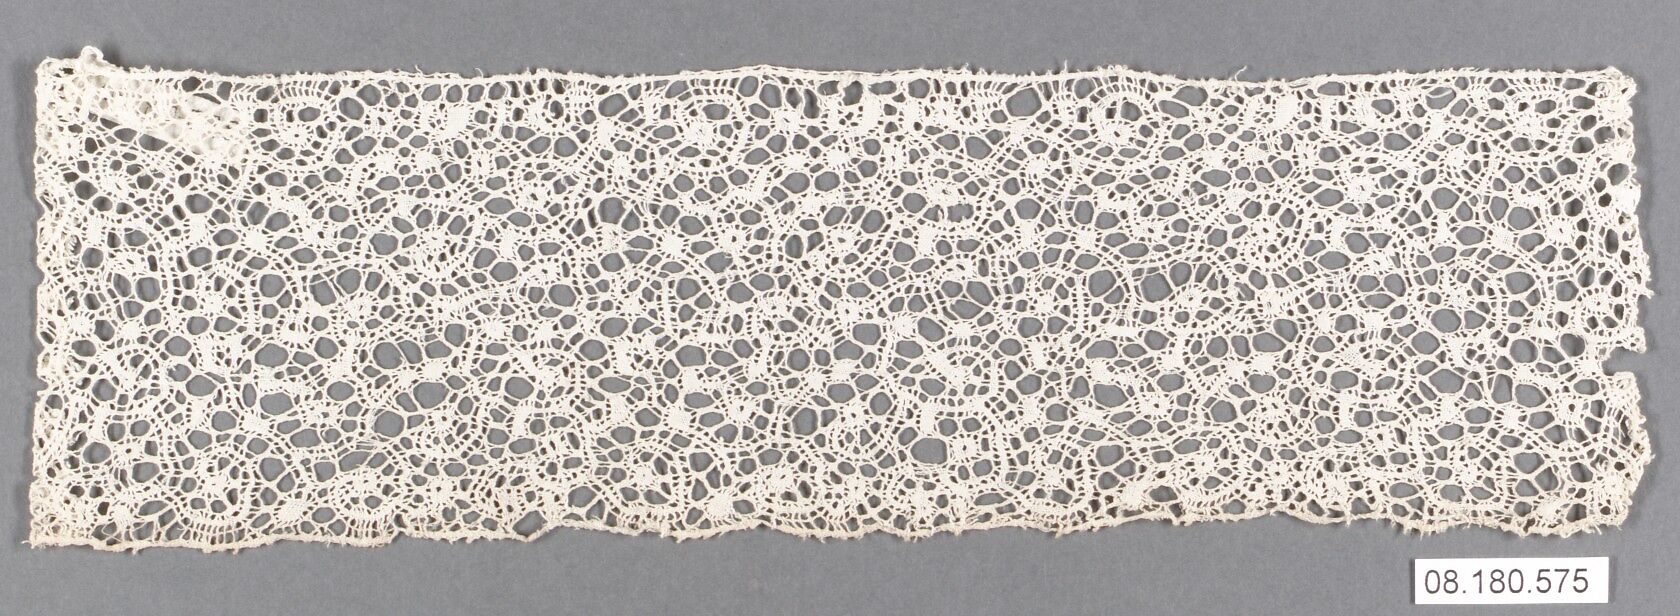 Piece, Bobbin lace, Italian, Sicily 